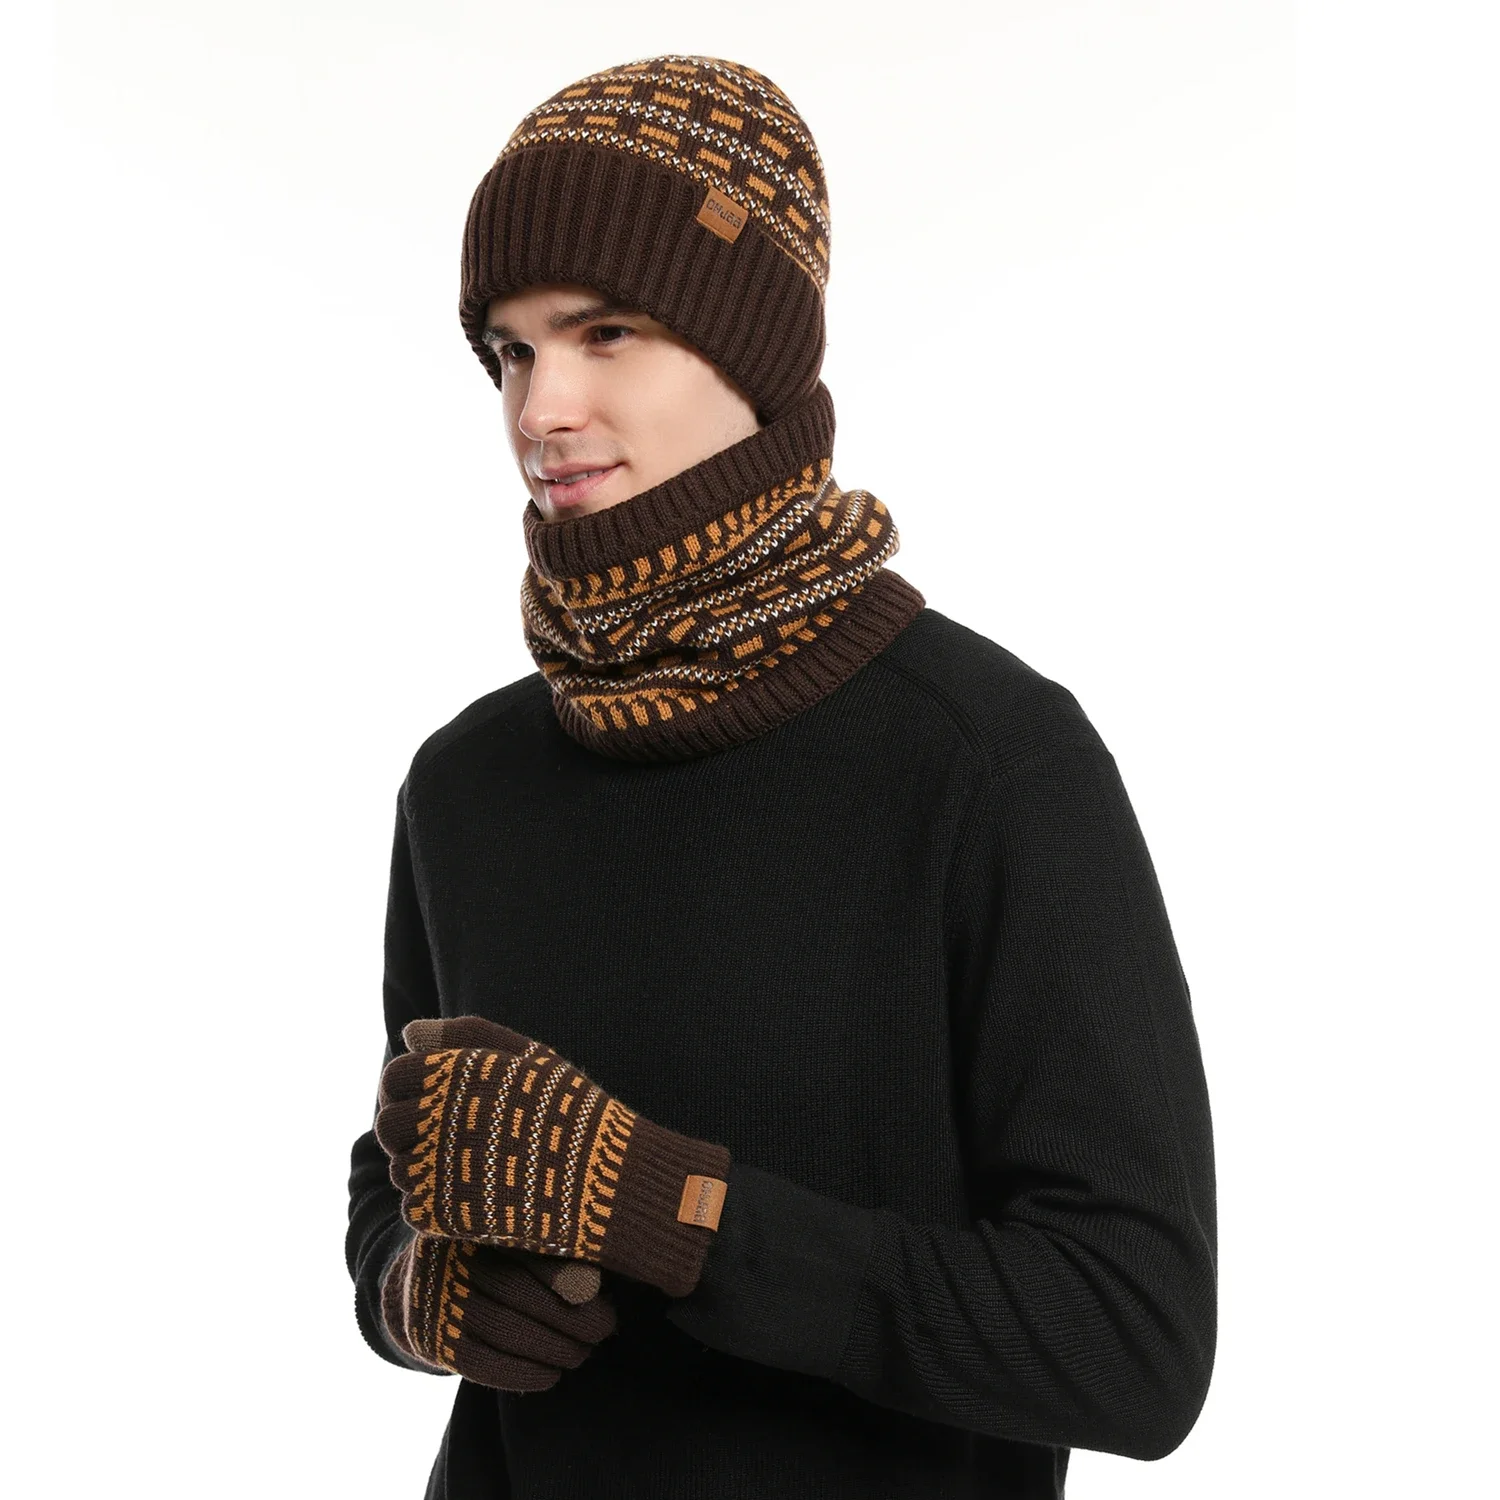 Set invernale da uomo Keep Warm Set berretto Unisex guanti con dita in pile fodera in pile sciarpa maschio filato di lana lavorato a maglia marmitta cappello con ghetta al collo